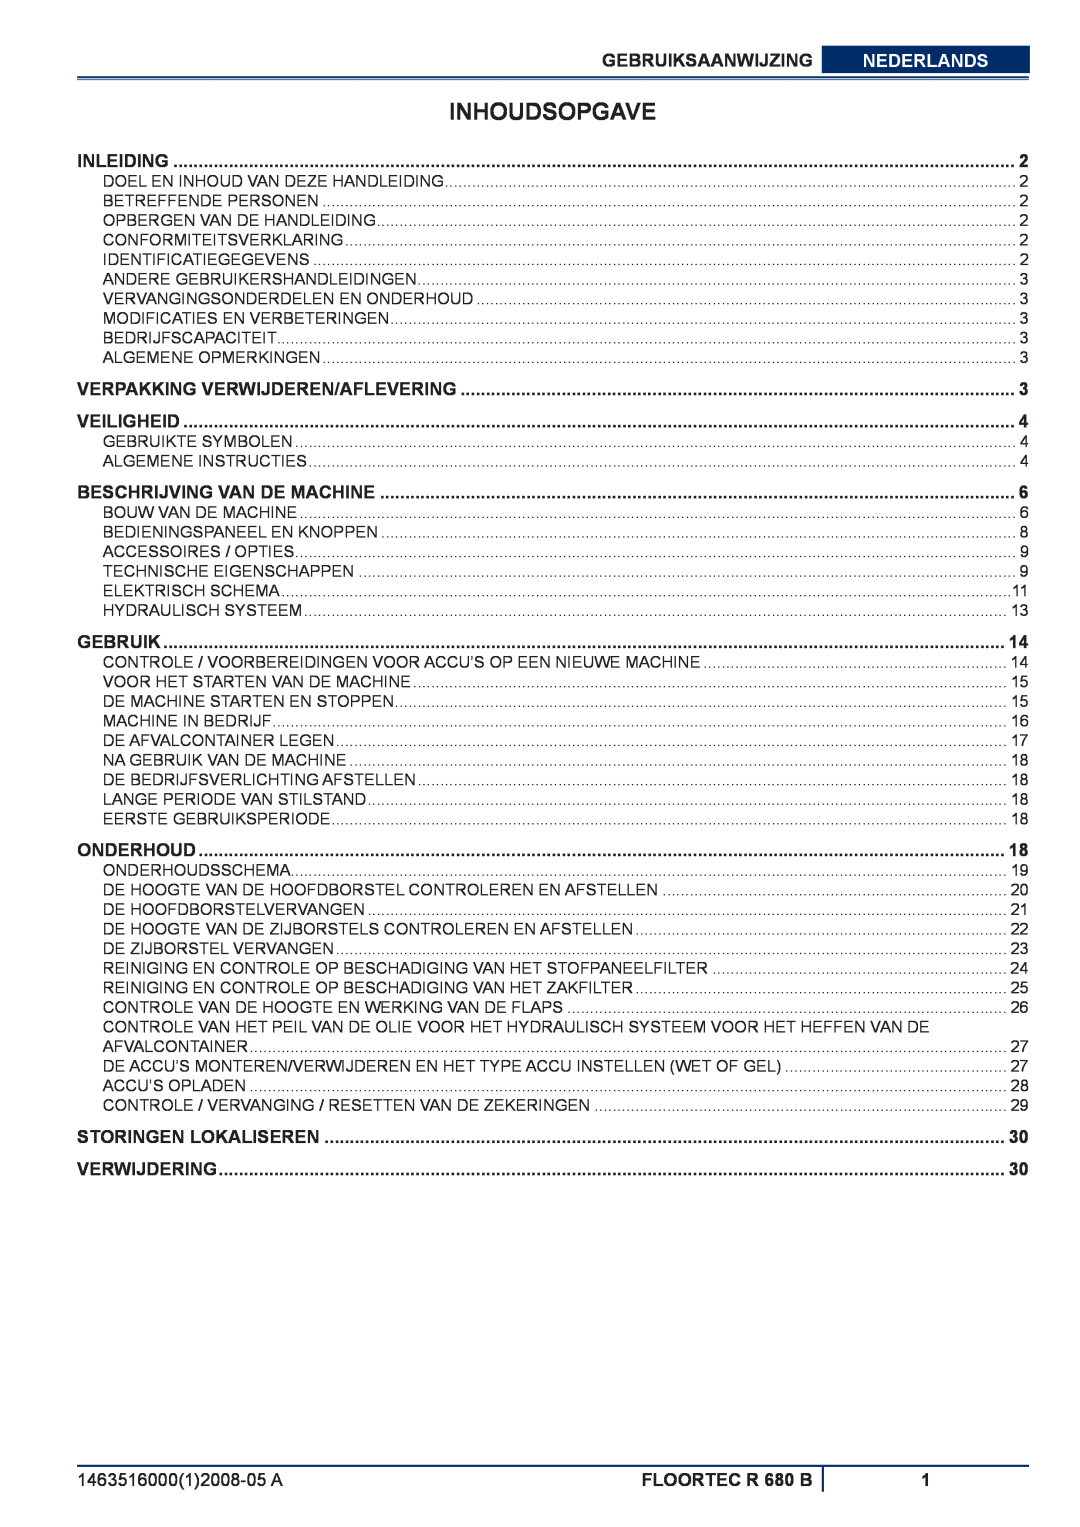 Nilfisk-ALTO Inhoudsopgave, Gebruiksaanwijzing, Nederlands, FLOORTEC R 680 B, Inleiding, Veiligheid, Onderhoud 